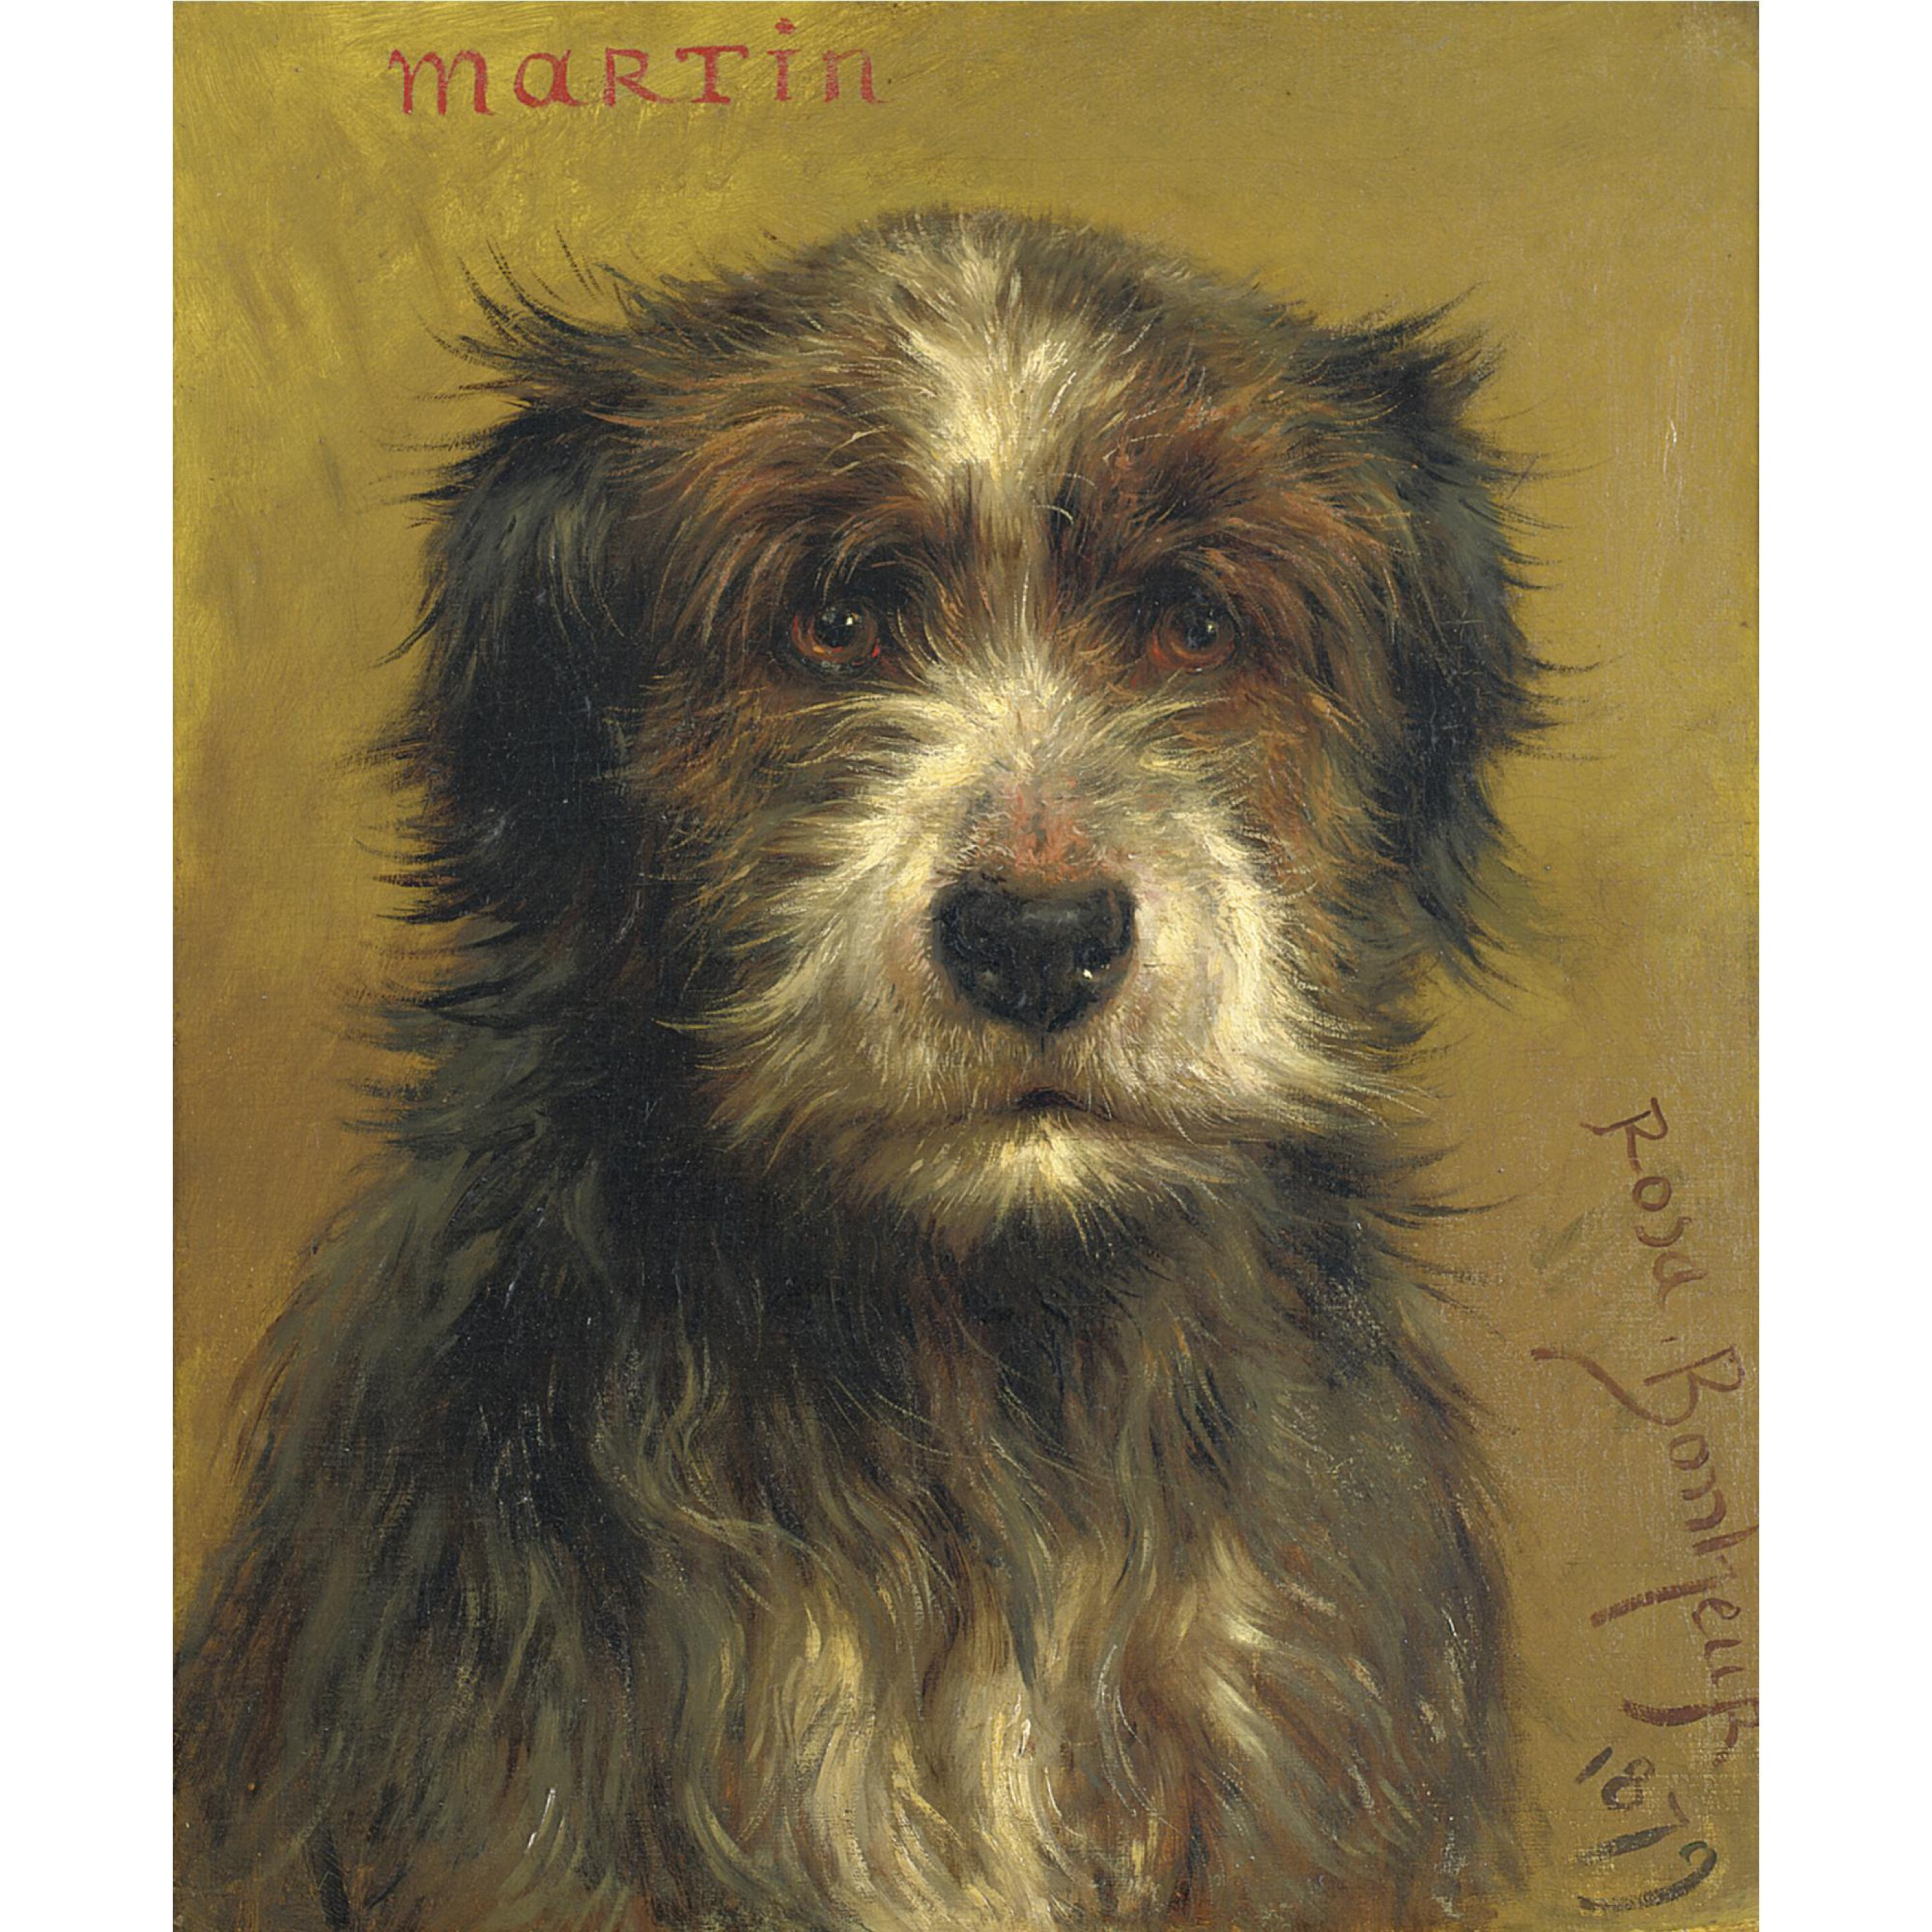 马丁，一只小猎犬 by 罗莎 博纳尔 - 1879 - 47 x 37.2 cm 